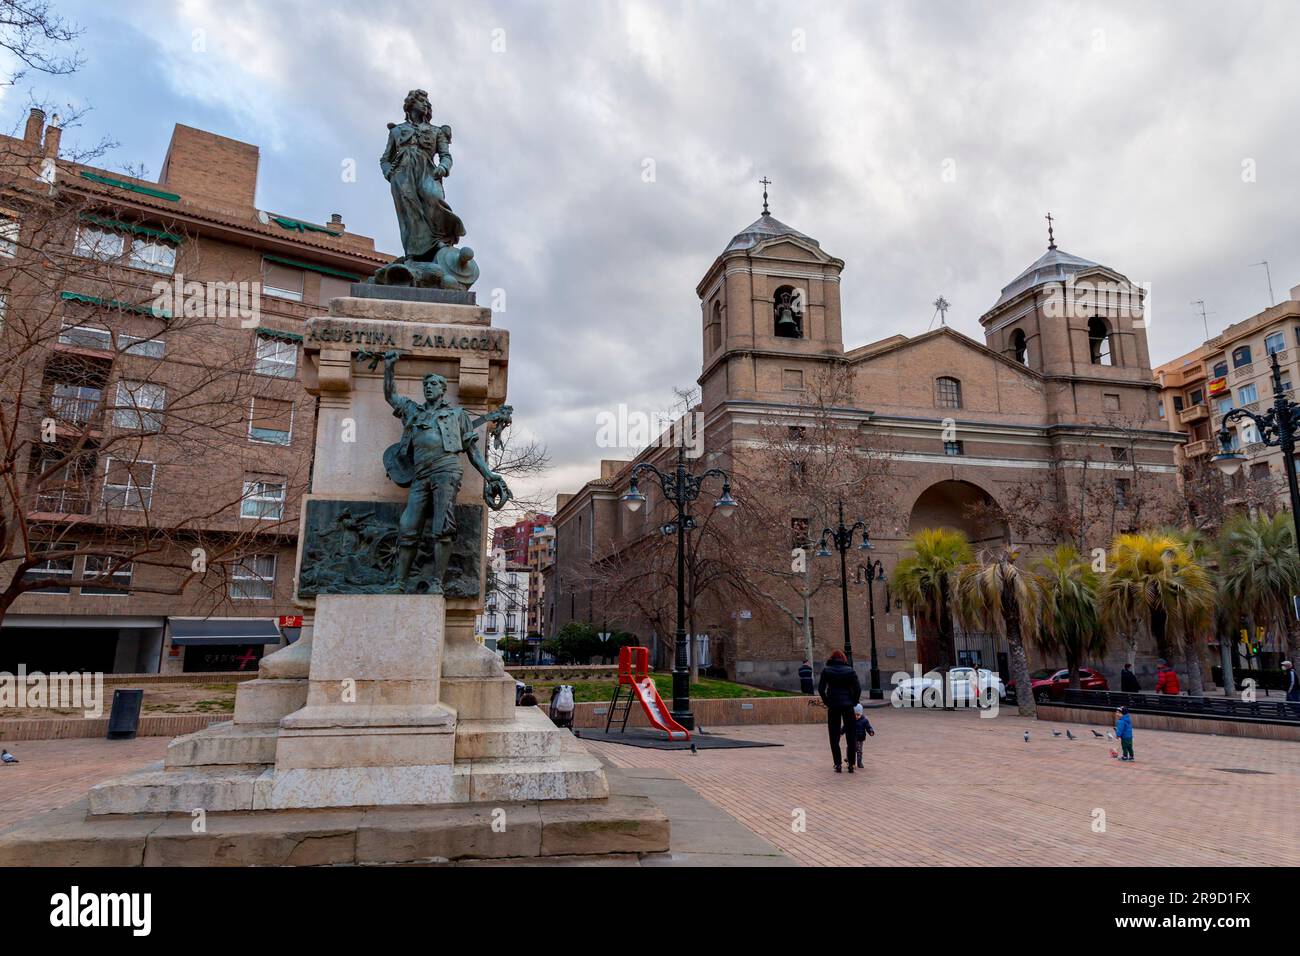 Saragossa, Spanien - 14. Februar 2022: Denkmal der Augustina Raimunda Maria Saragossa i Domenech, eine öffentliche Heldin der Stadt während des Halbinsel-Krieges. Stockfoto